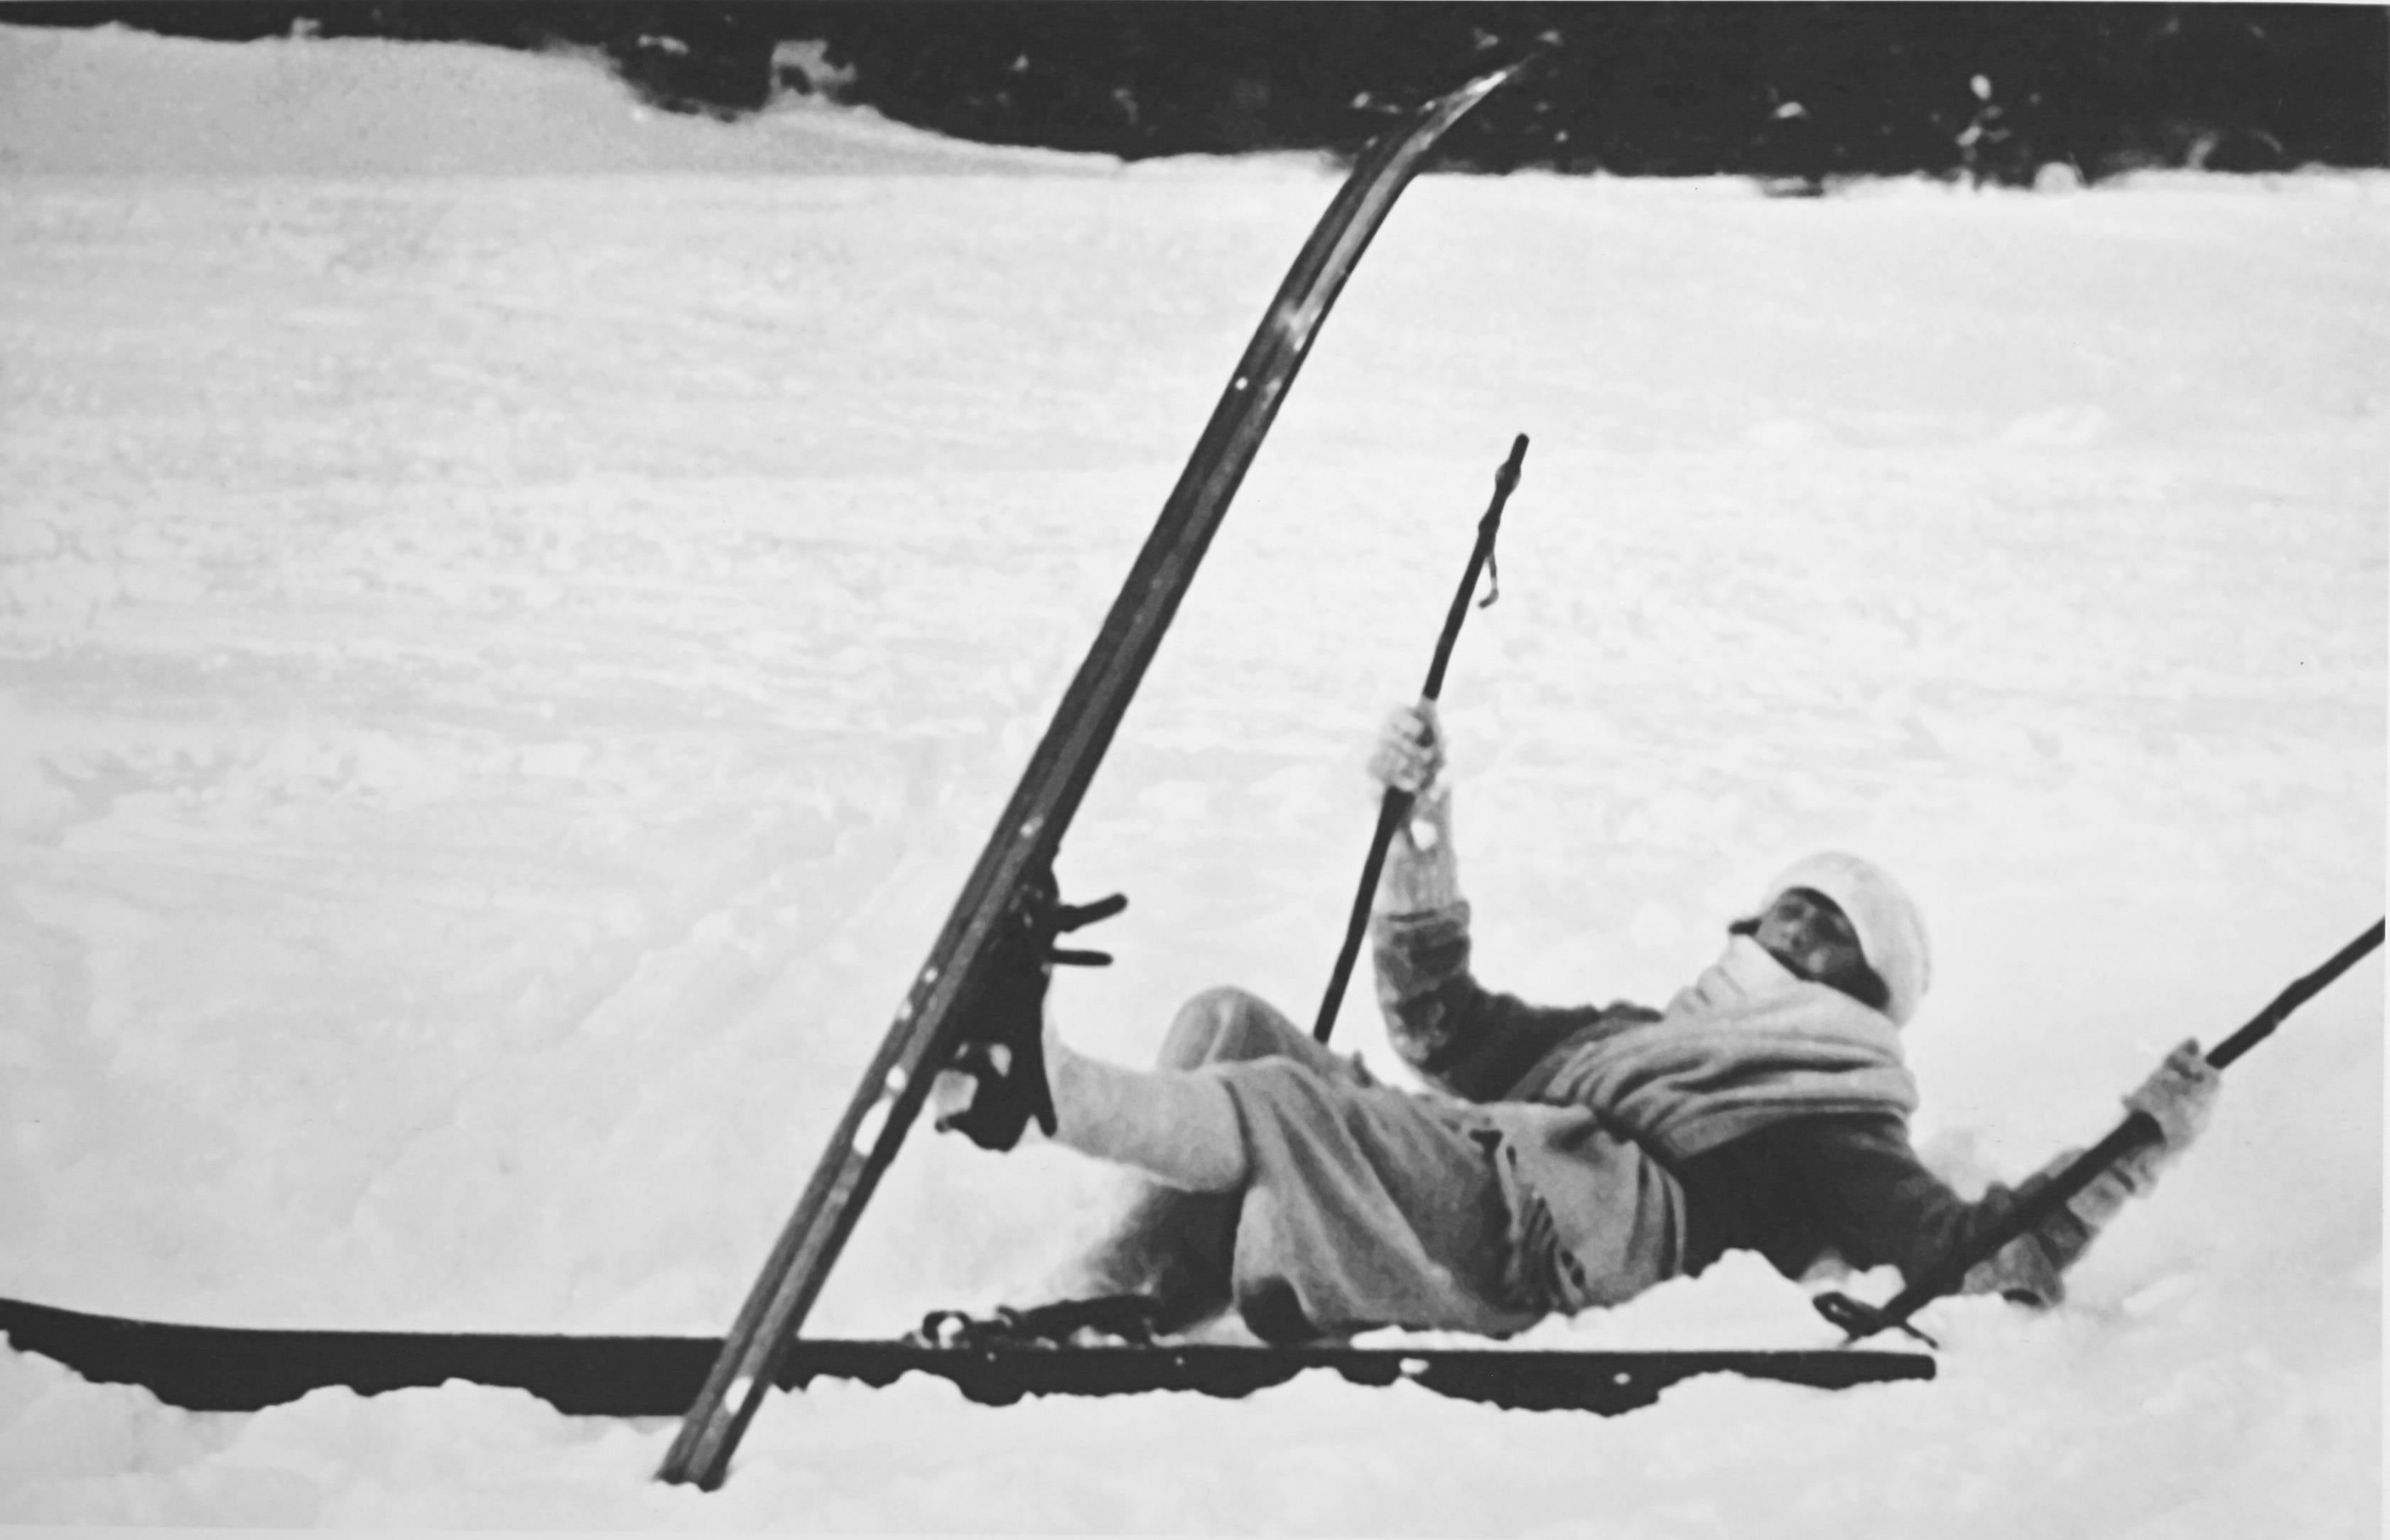 Vintage Ski Fotografie, antike Alpin Ski Fotografie.
OPPS!